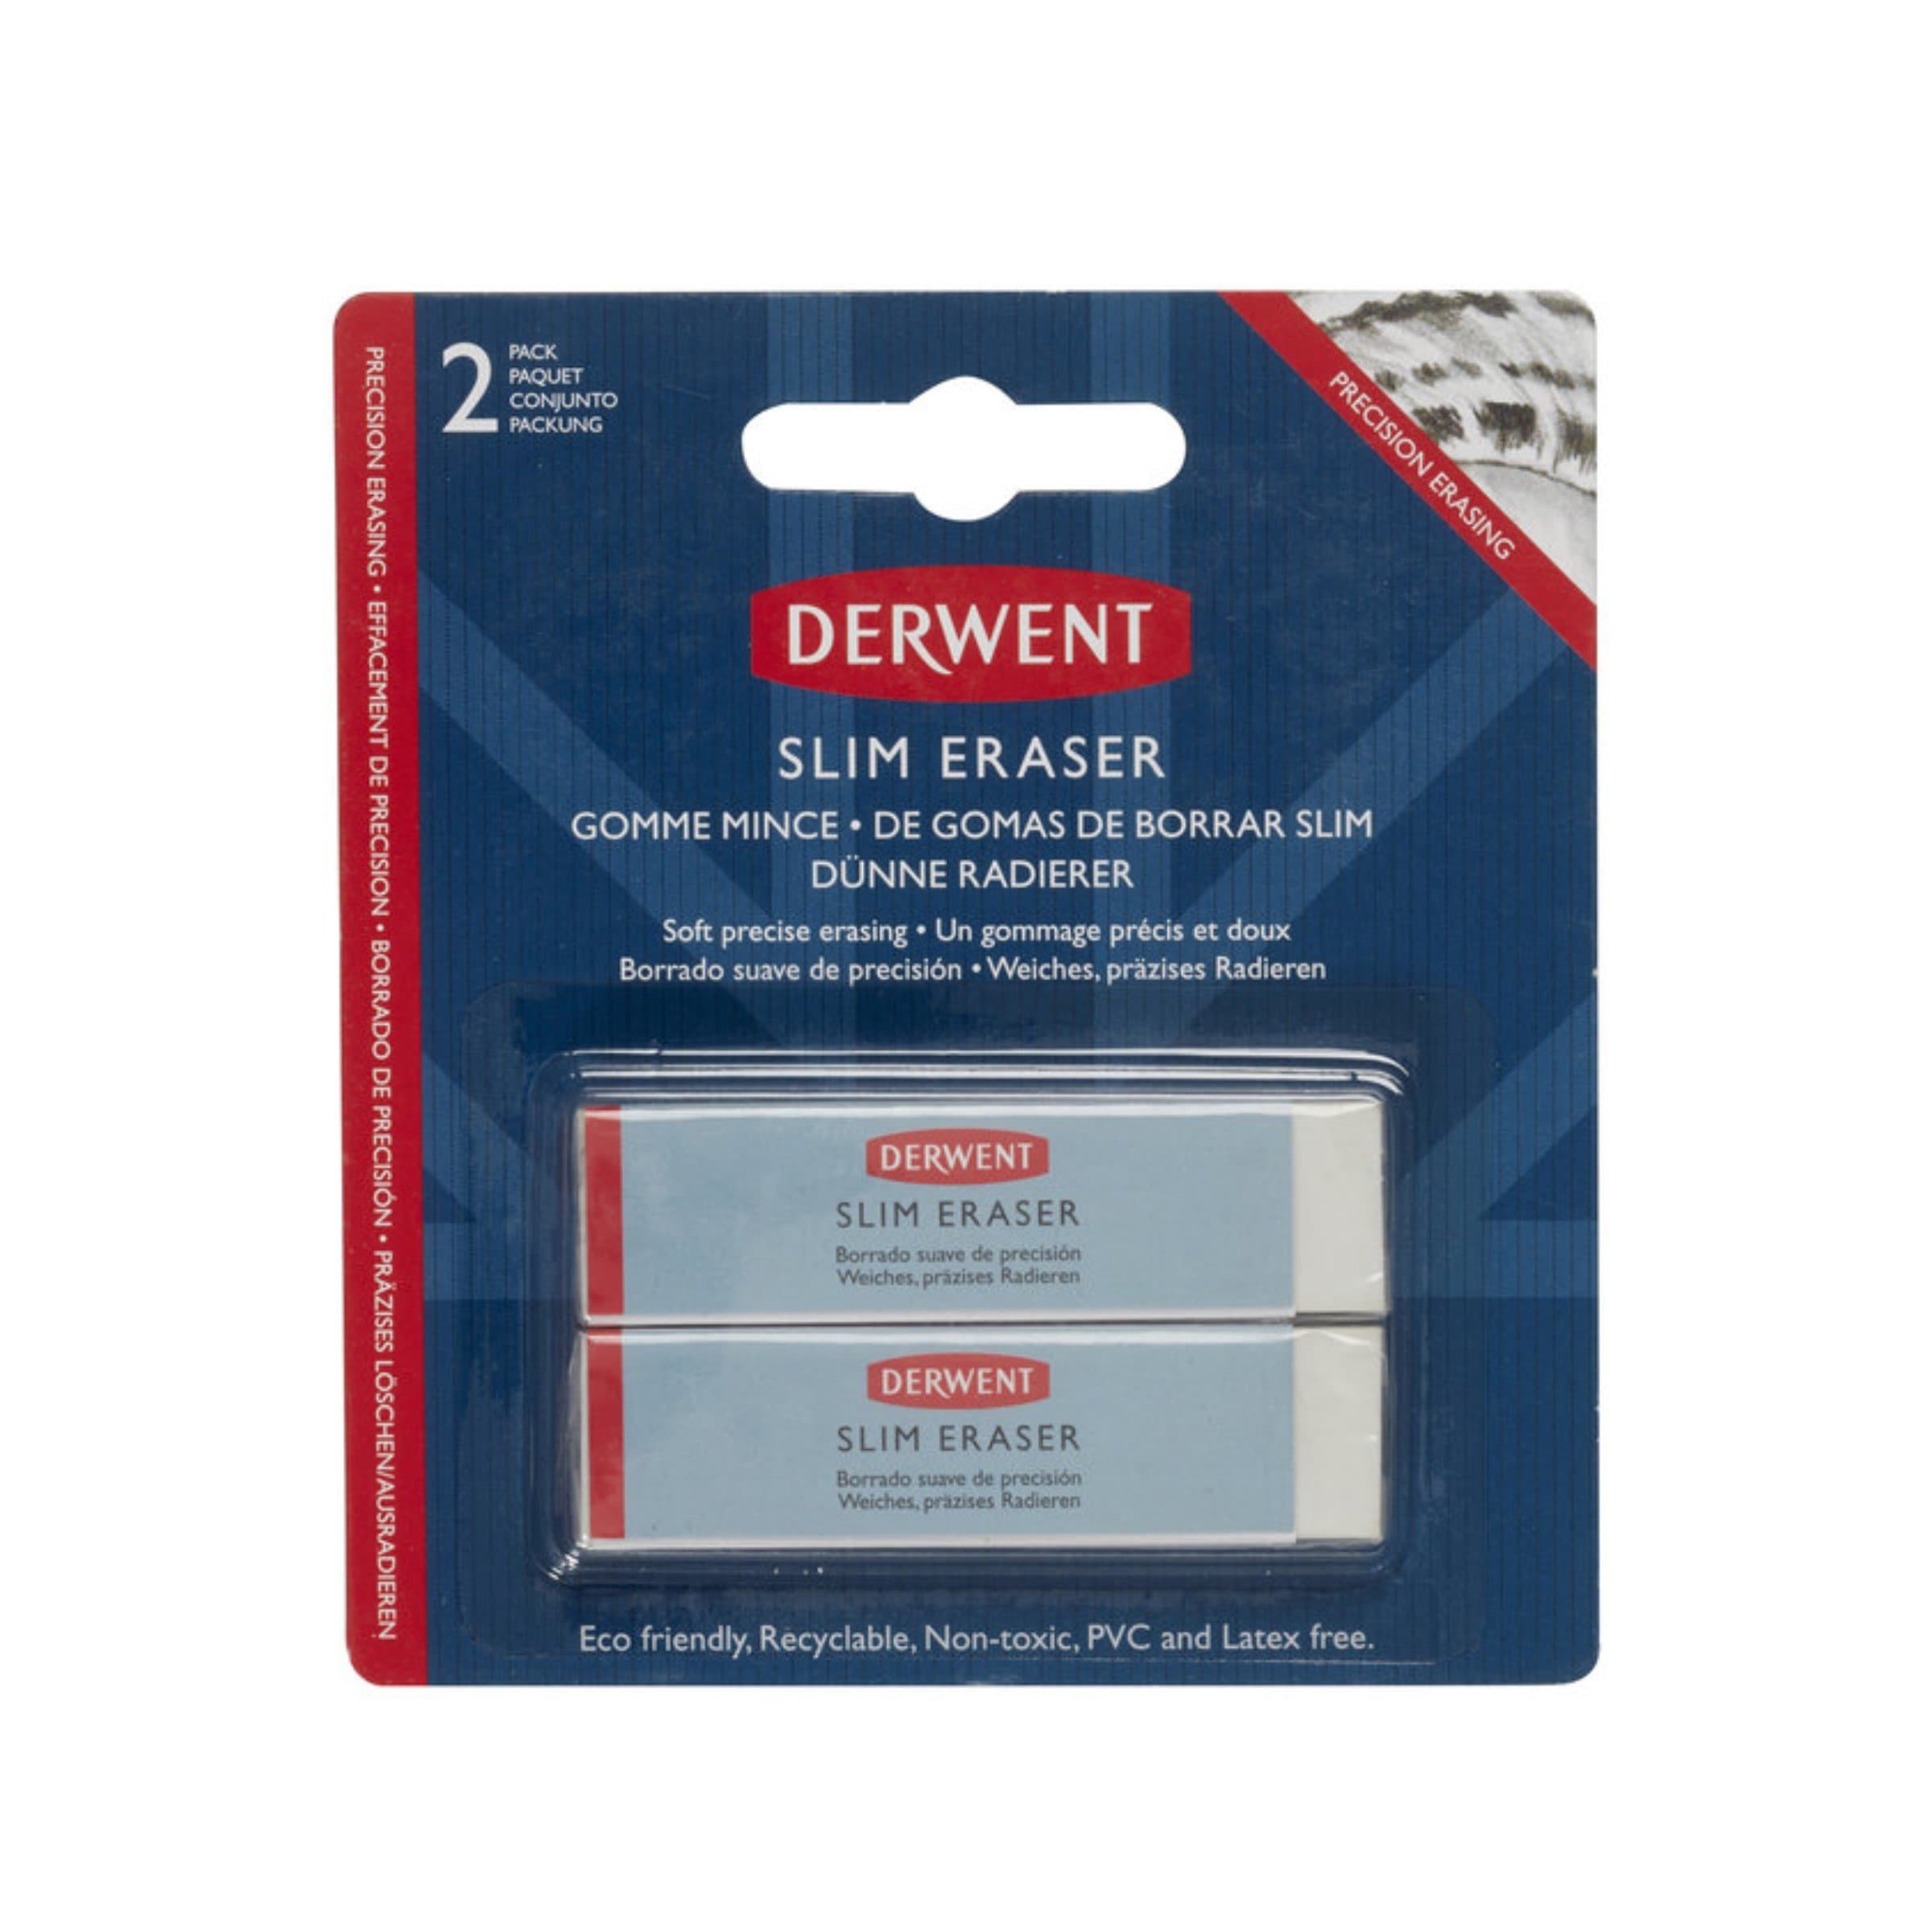 Derwent - Set con 2 gomas de borrar delgadas  #2305808